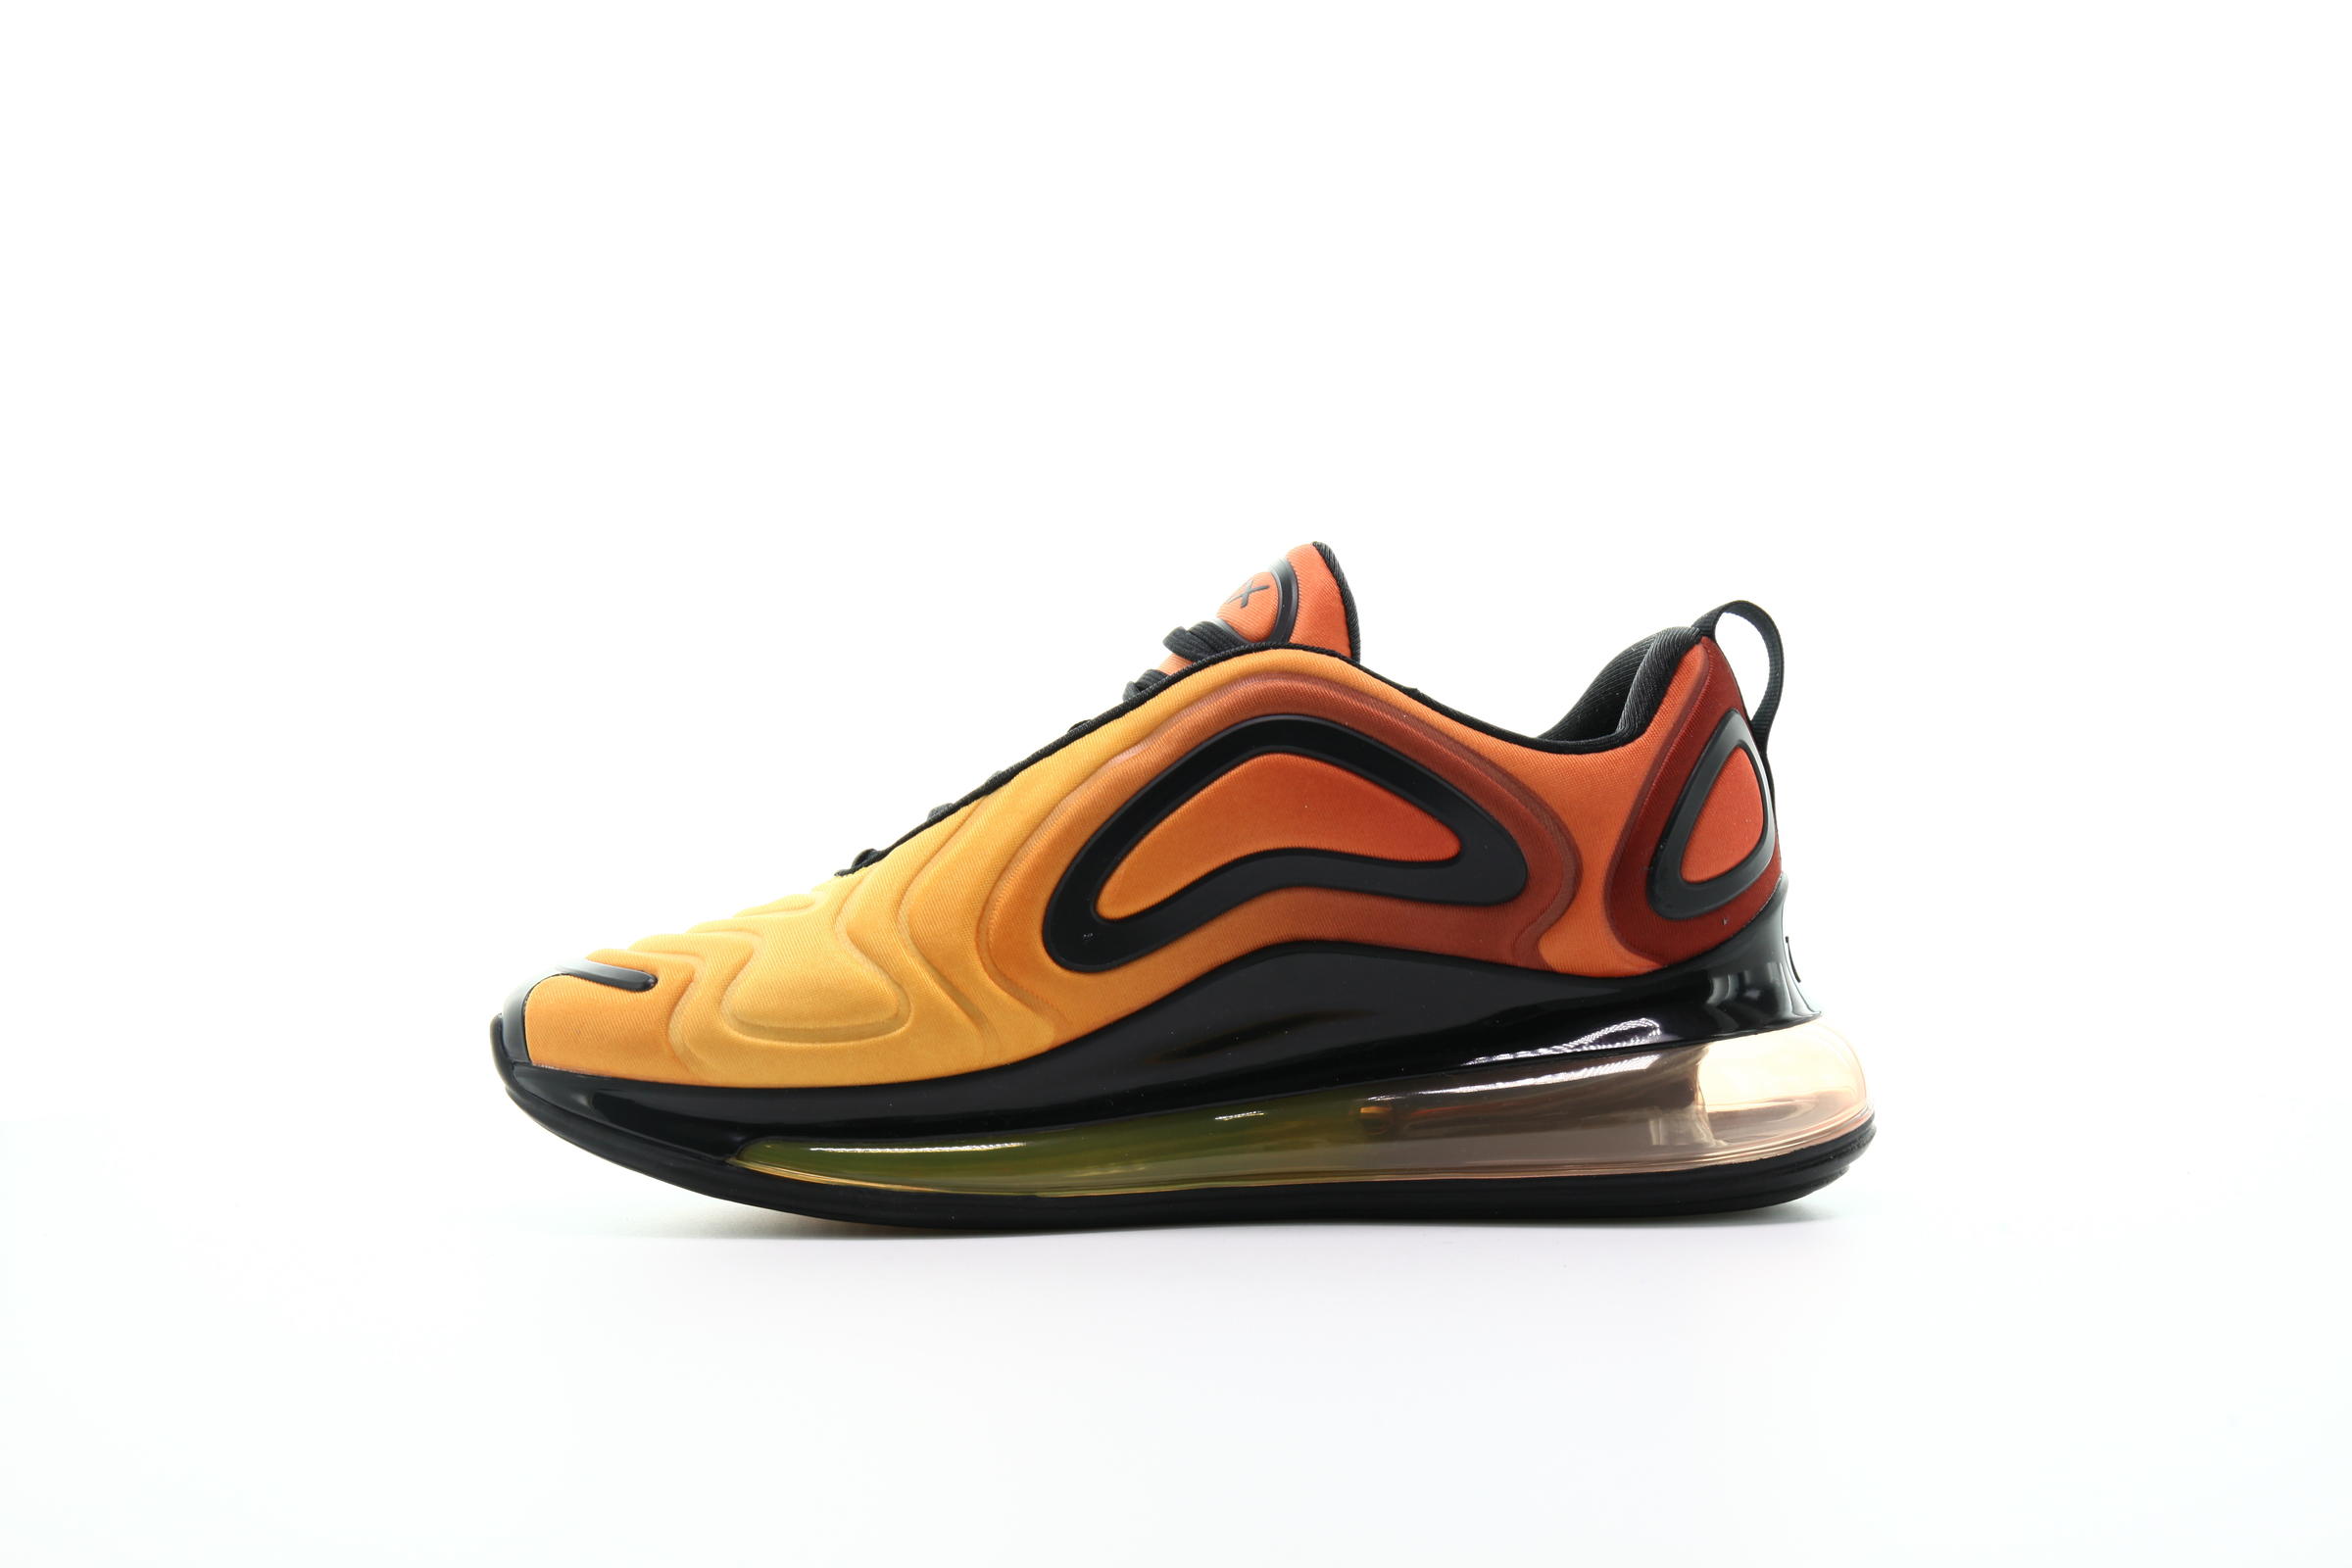 Nike Air Max 720 "Laser Orange"